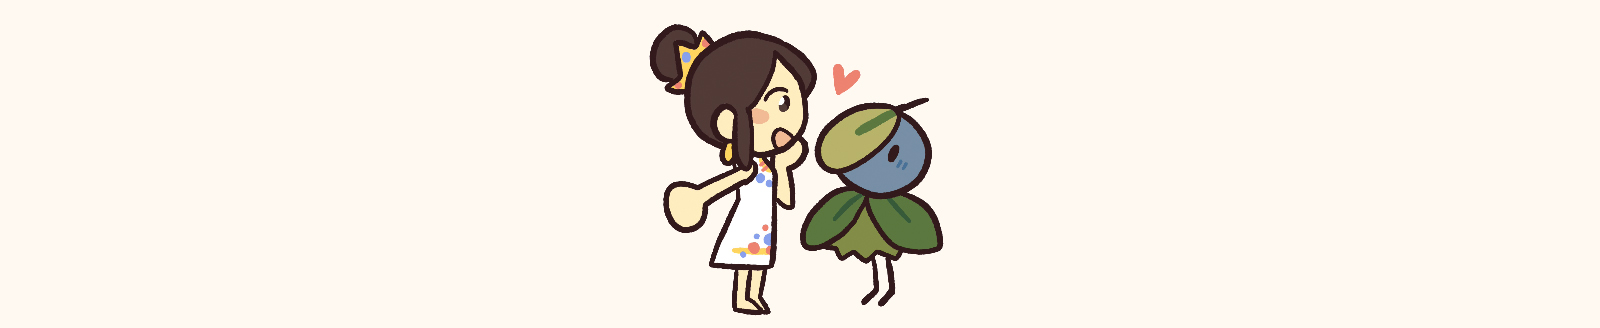 Bai Mudan and a Tea Minion